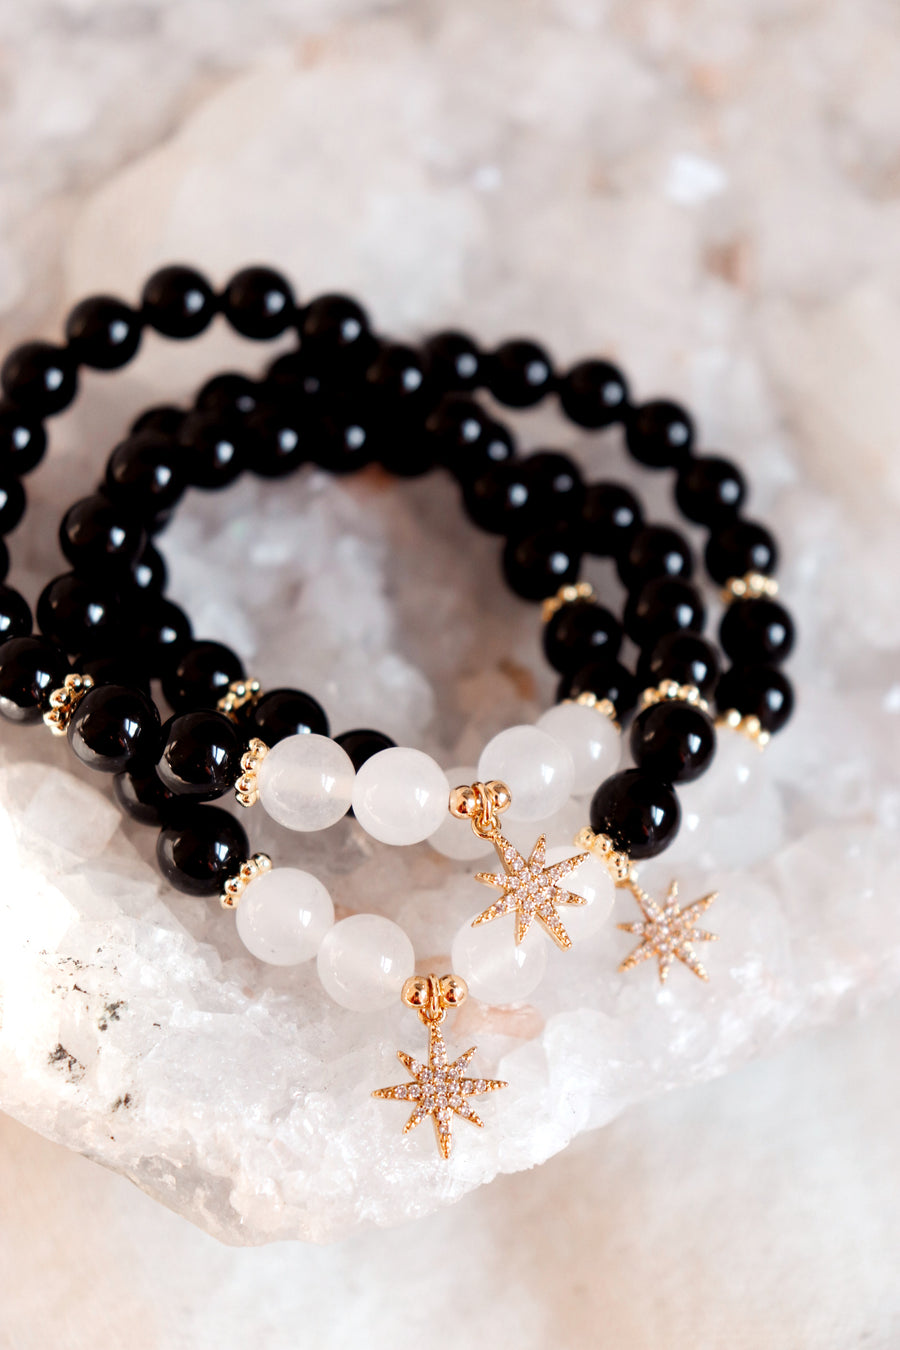 I am guided by my inner light | black tourmaline + selenite mala bracelet